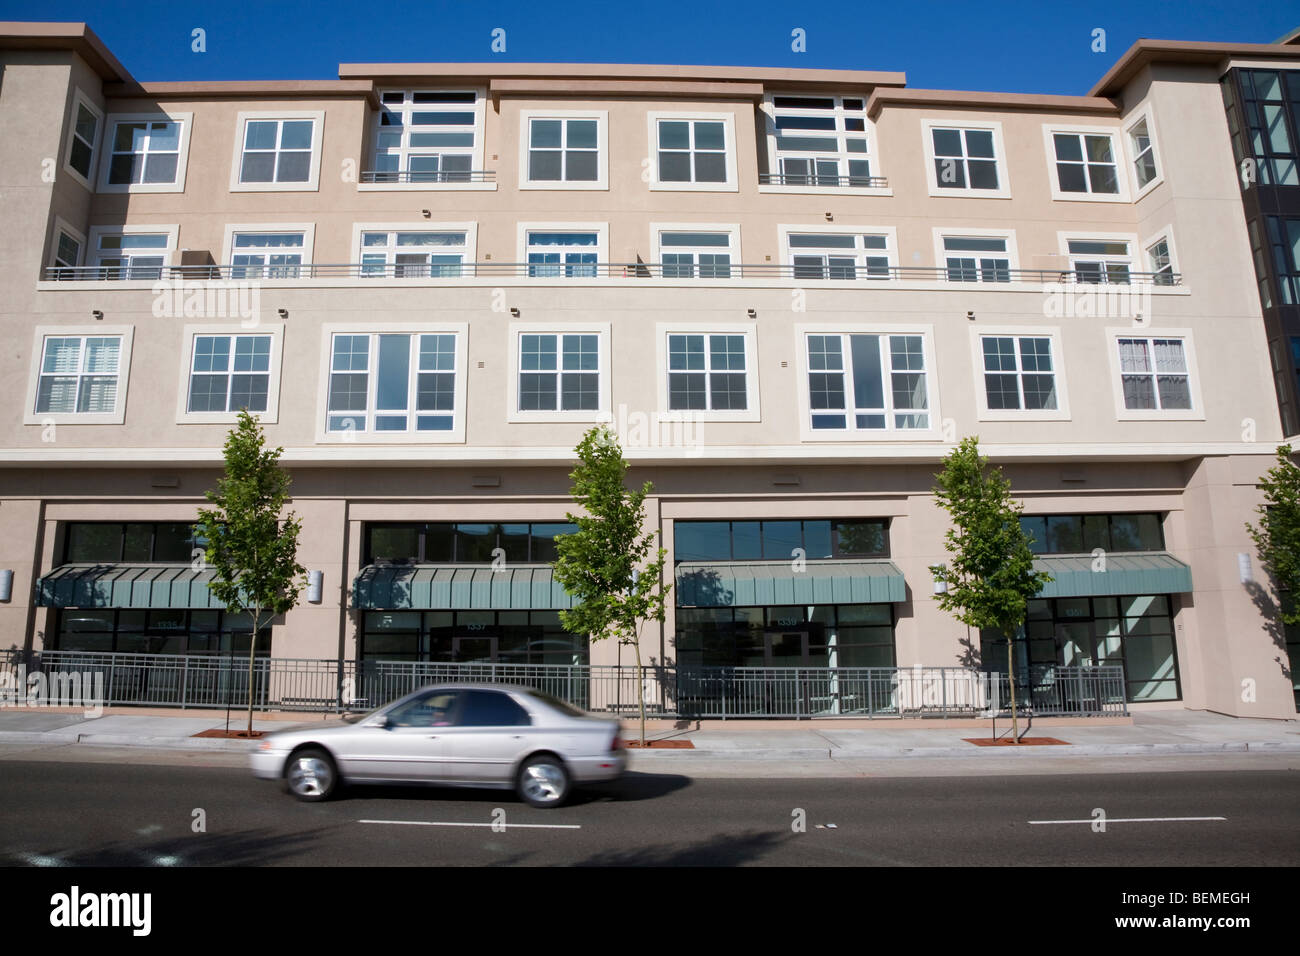 Desarrollo de la vivienda de uso mixto (multi uso). Condominios residenciales y de oficinas, espacios de venta minorista. Park Broadway, Millbrae, CA, EE.UU. Foto de stock